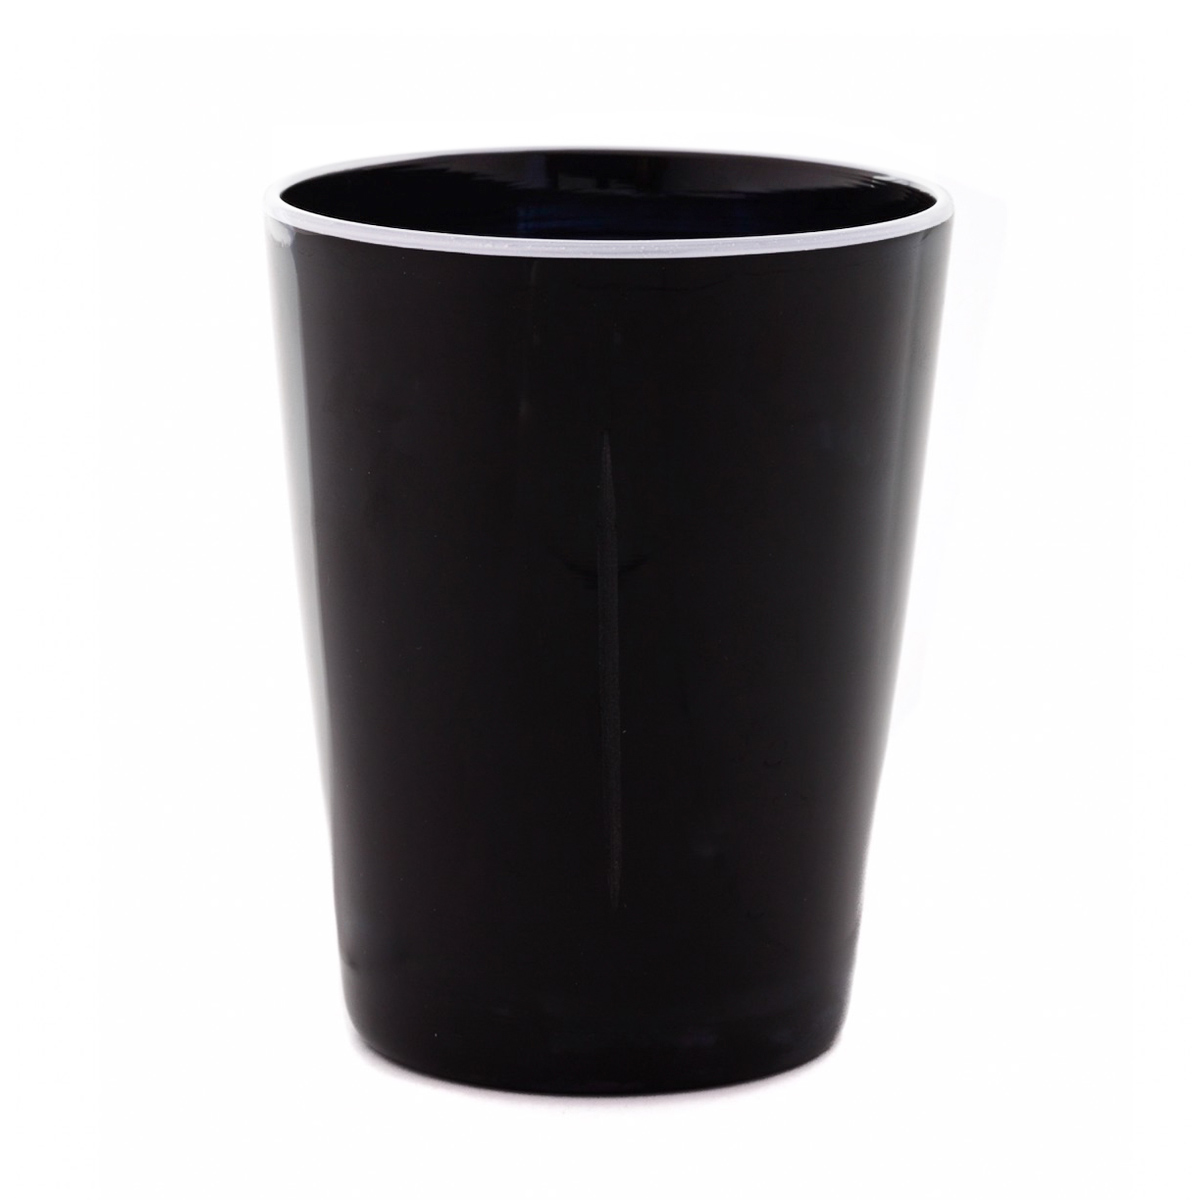 fontana-nero-taglio-black-glass